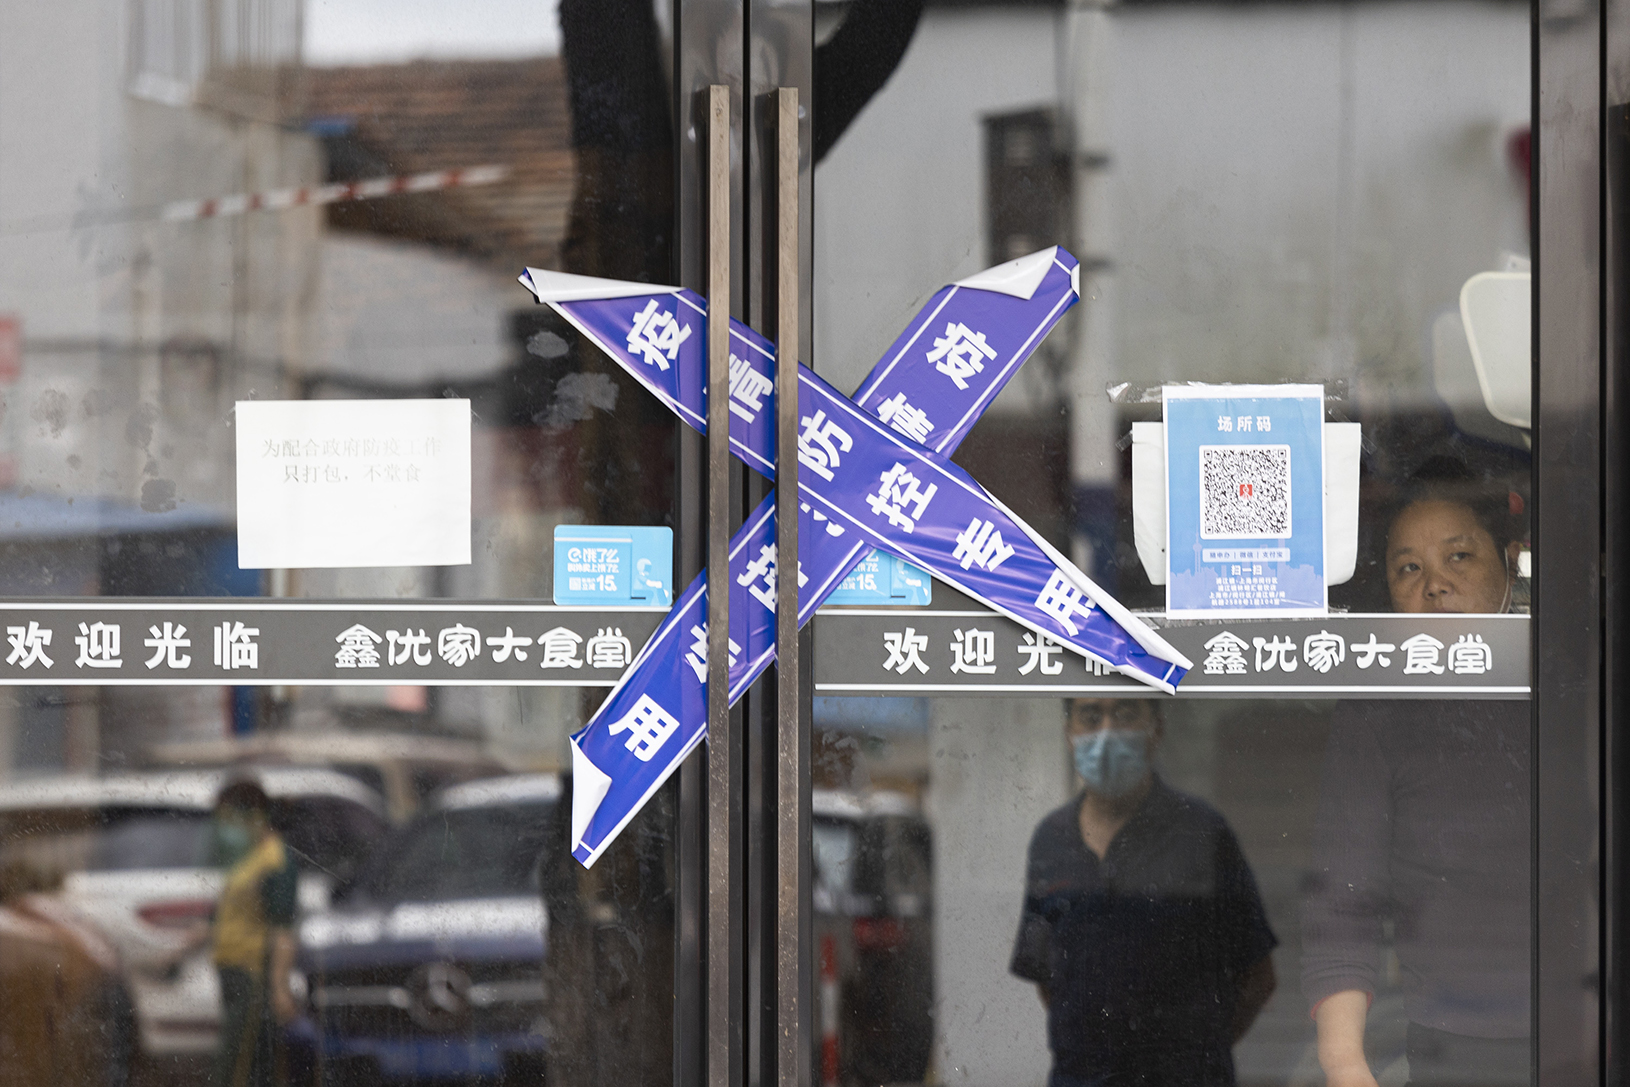 2022年，中國40個重點城市中的企業總共有2,800多萬家，註銷總數是194萬家。其中，上海註銷總數達到28萬多家，居全國首位。圖為2022年5月23日，上海一家餐廳被貼上疫情防控封條。(Getty Images)